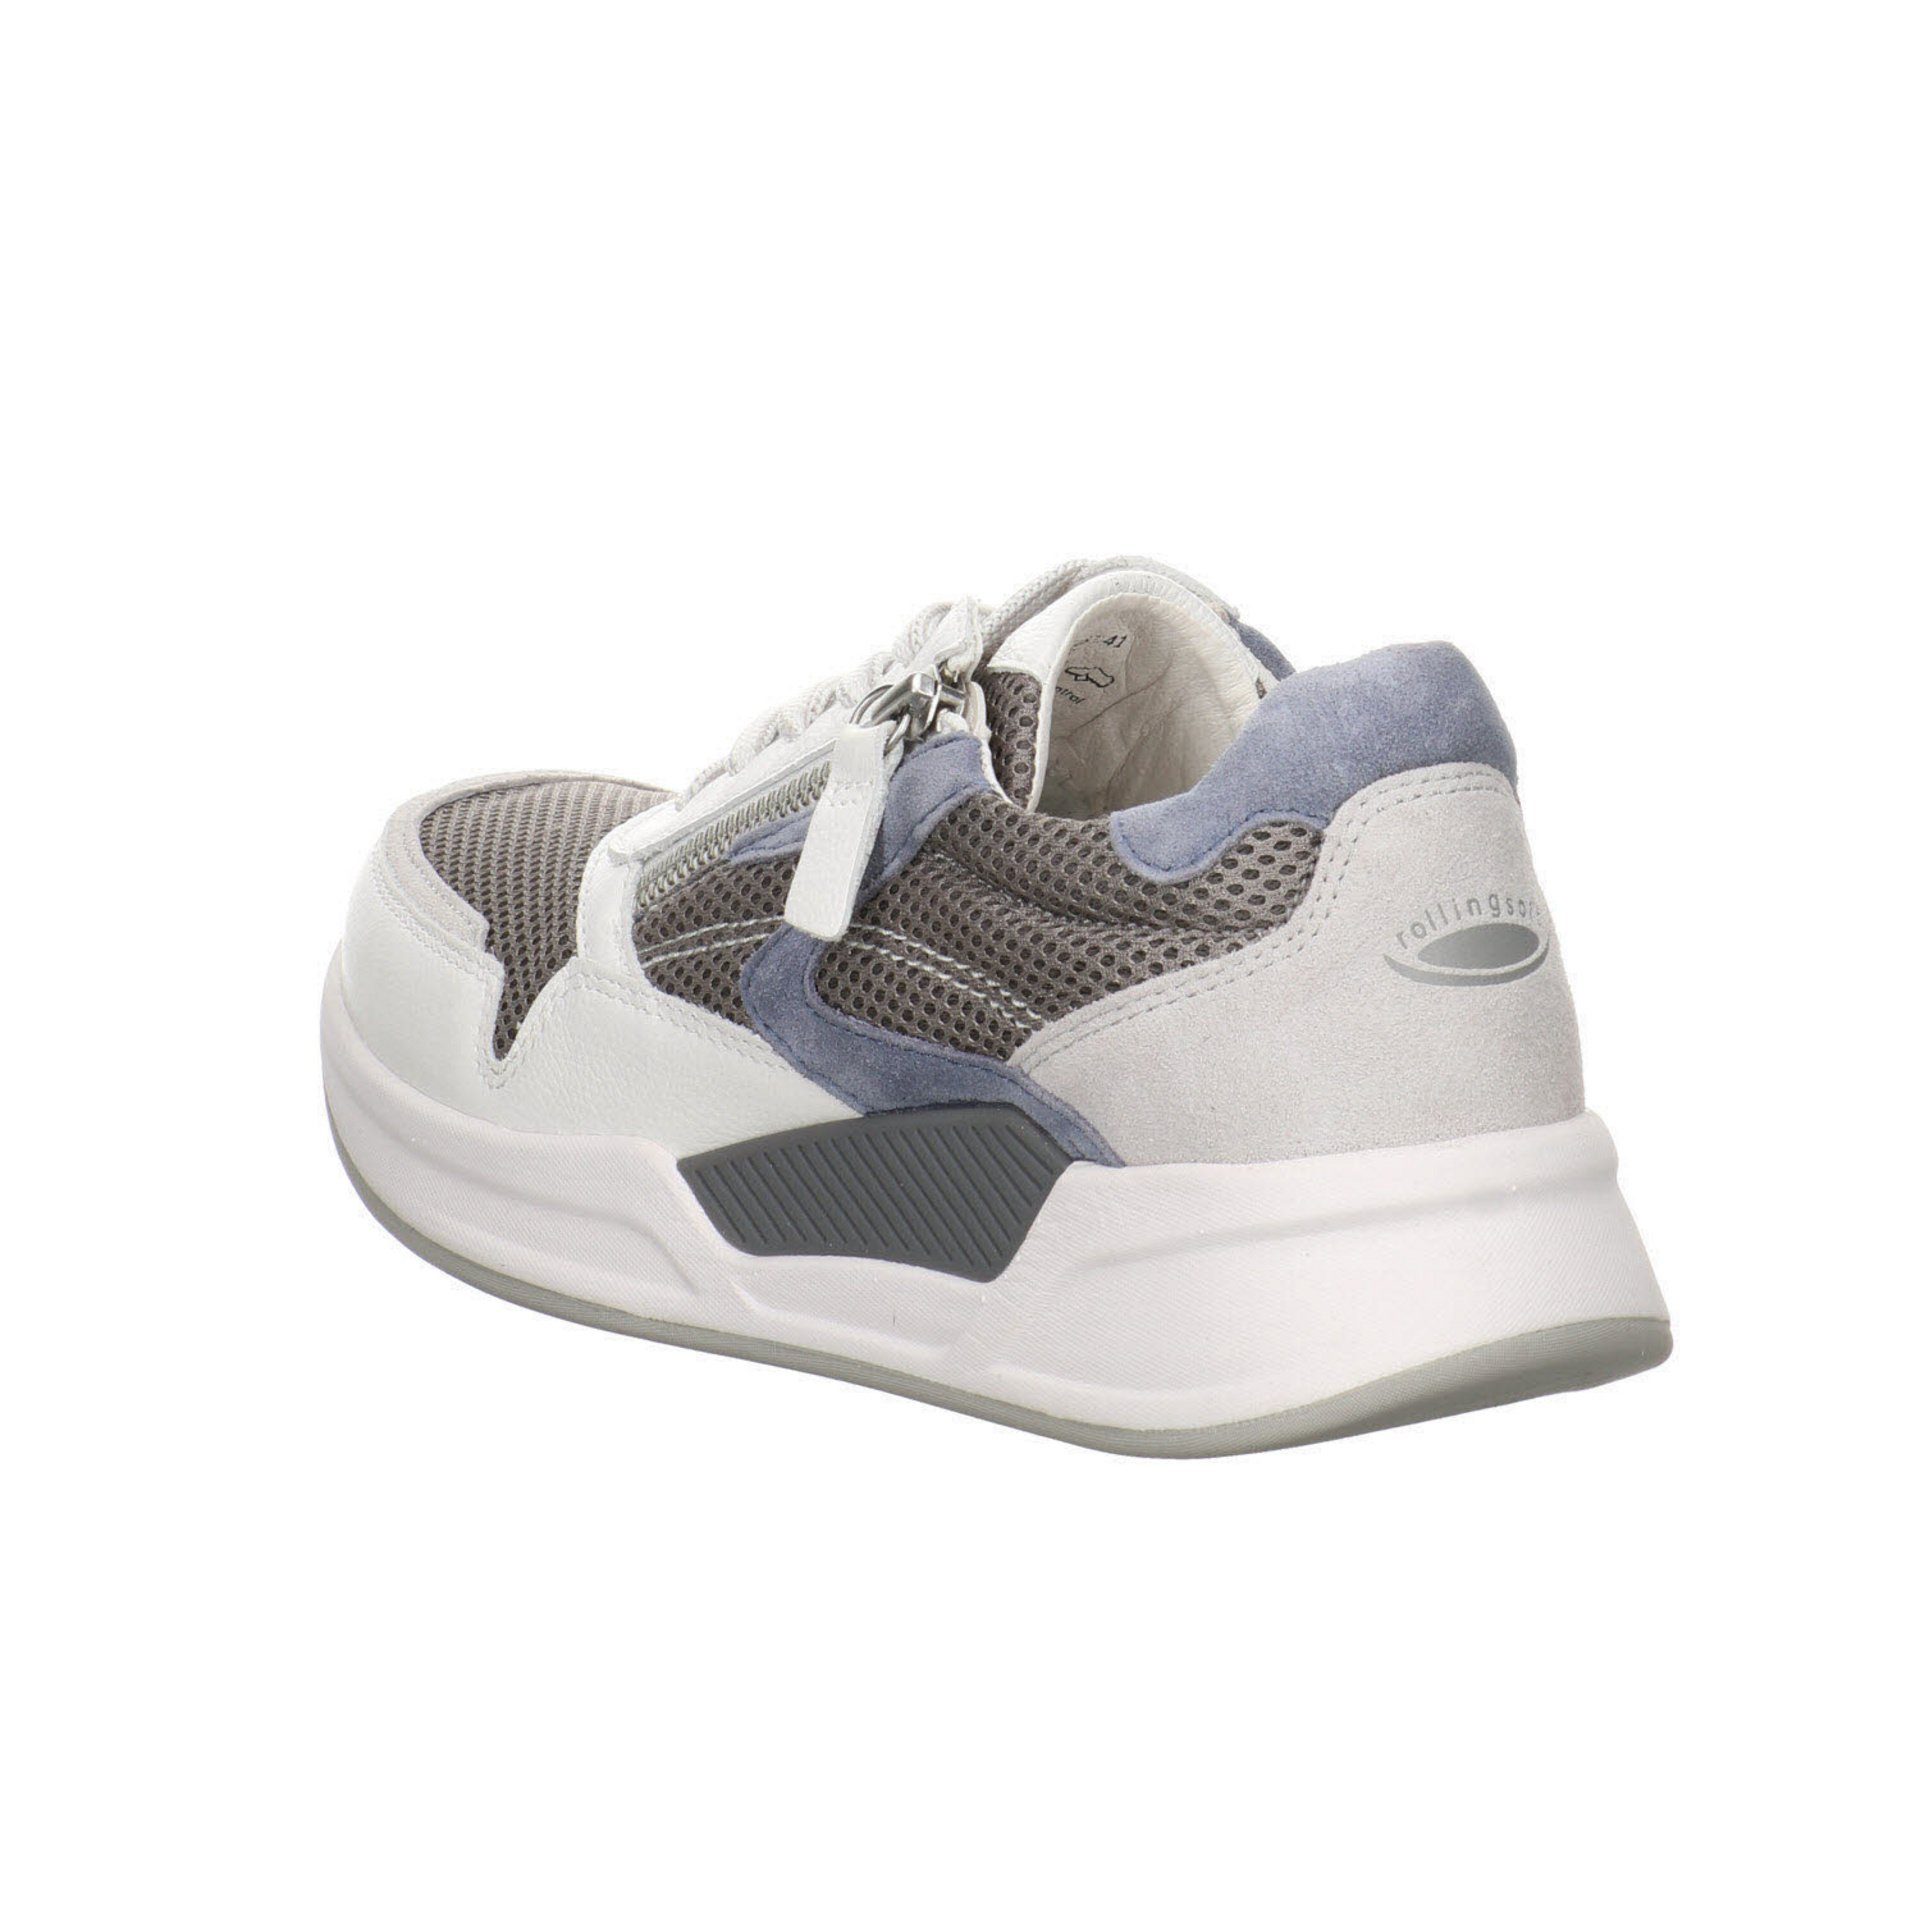 Schuhe Leder-/Textilkombination grau/weiss/nautic Sneaker / 41 Damen Schnürschuh Rollingsoft Sneaker Gabor